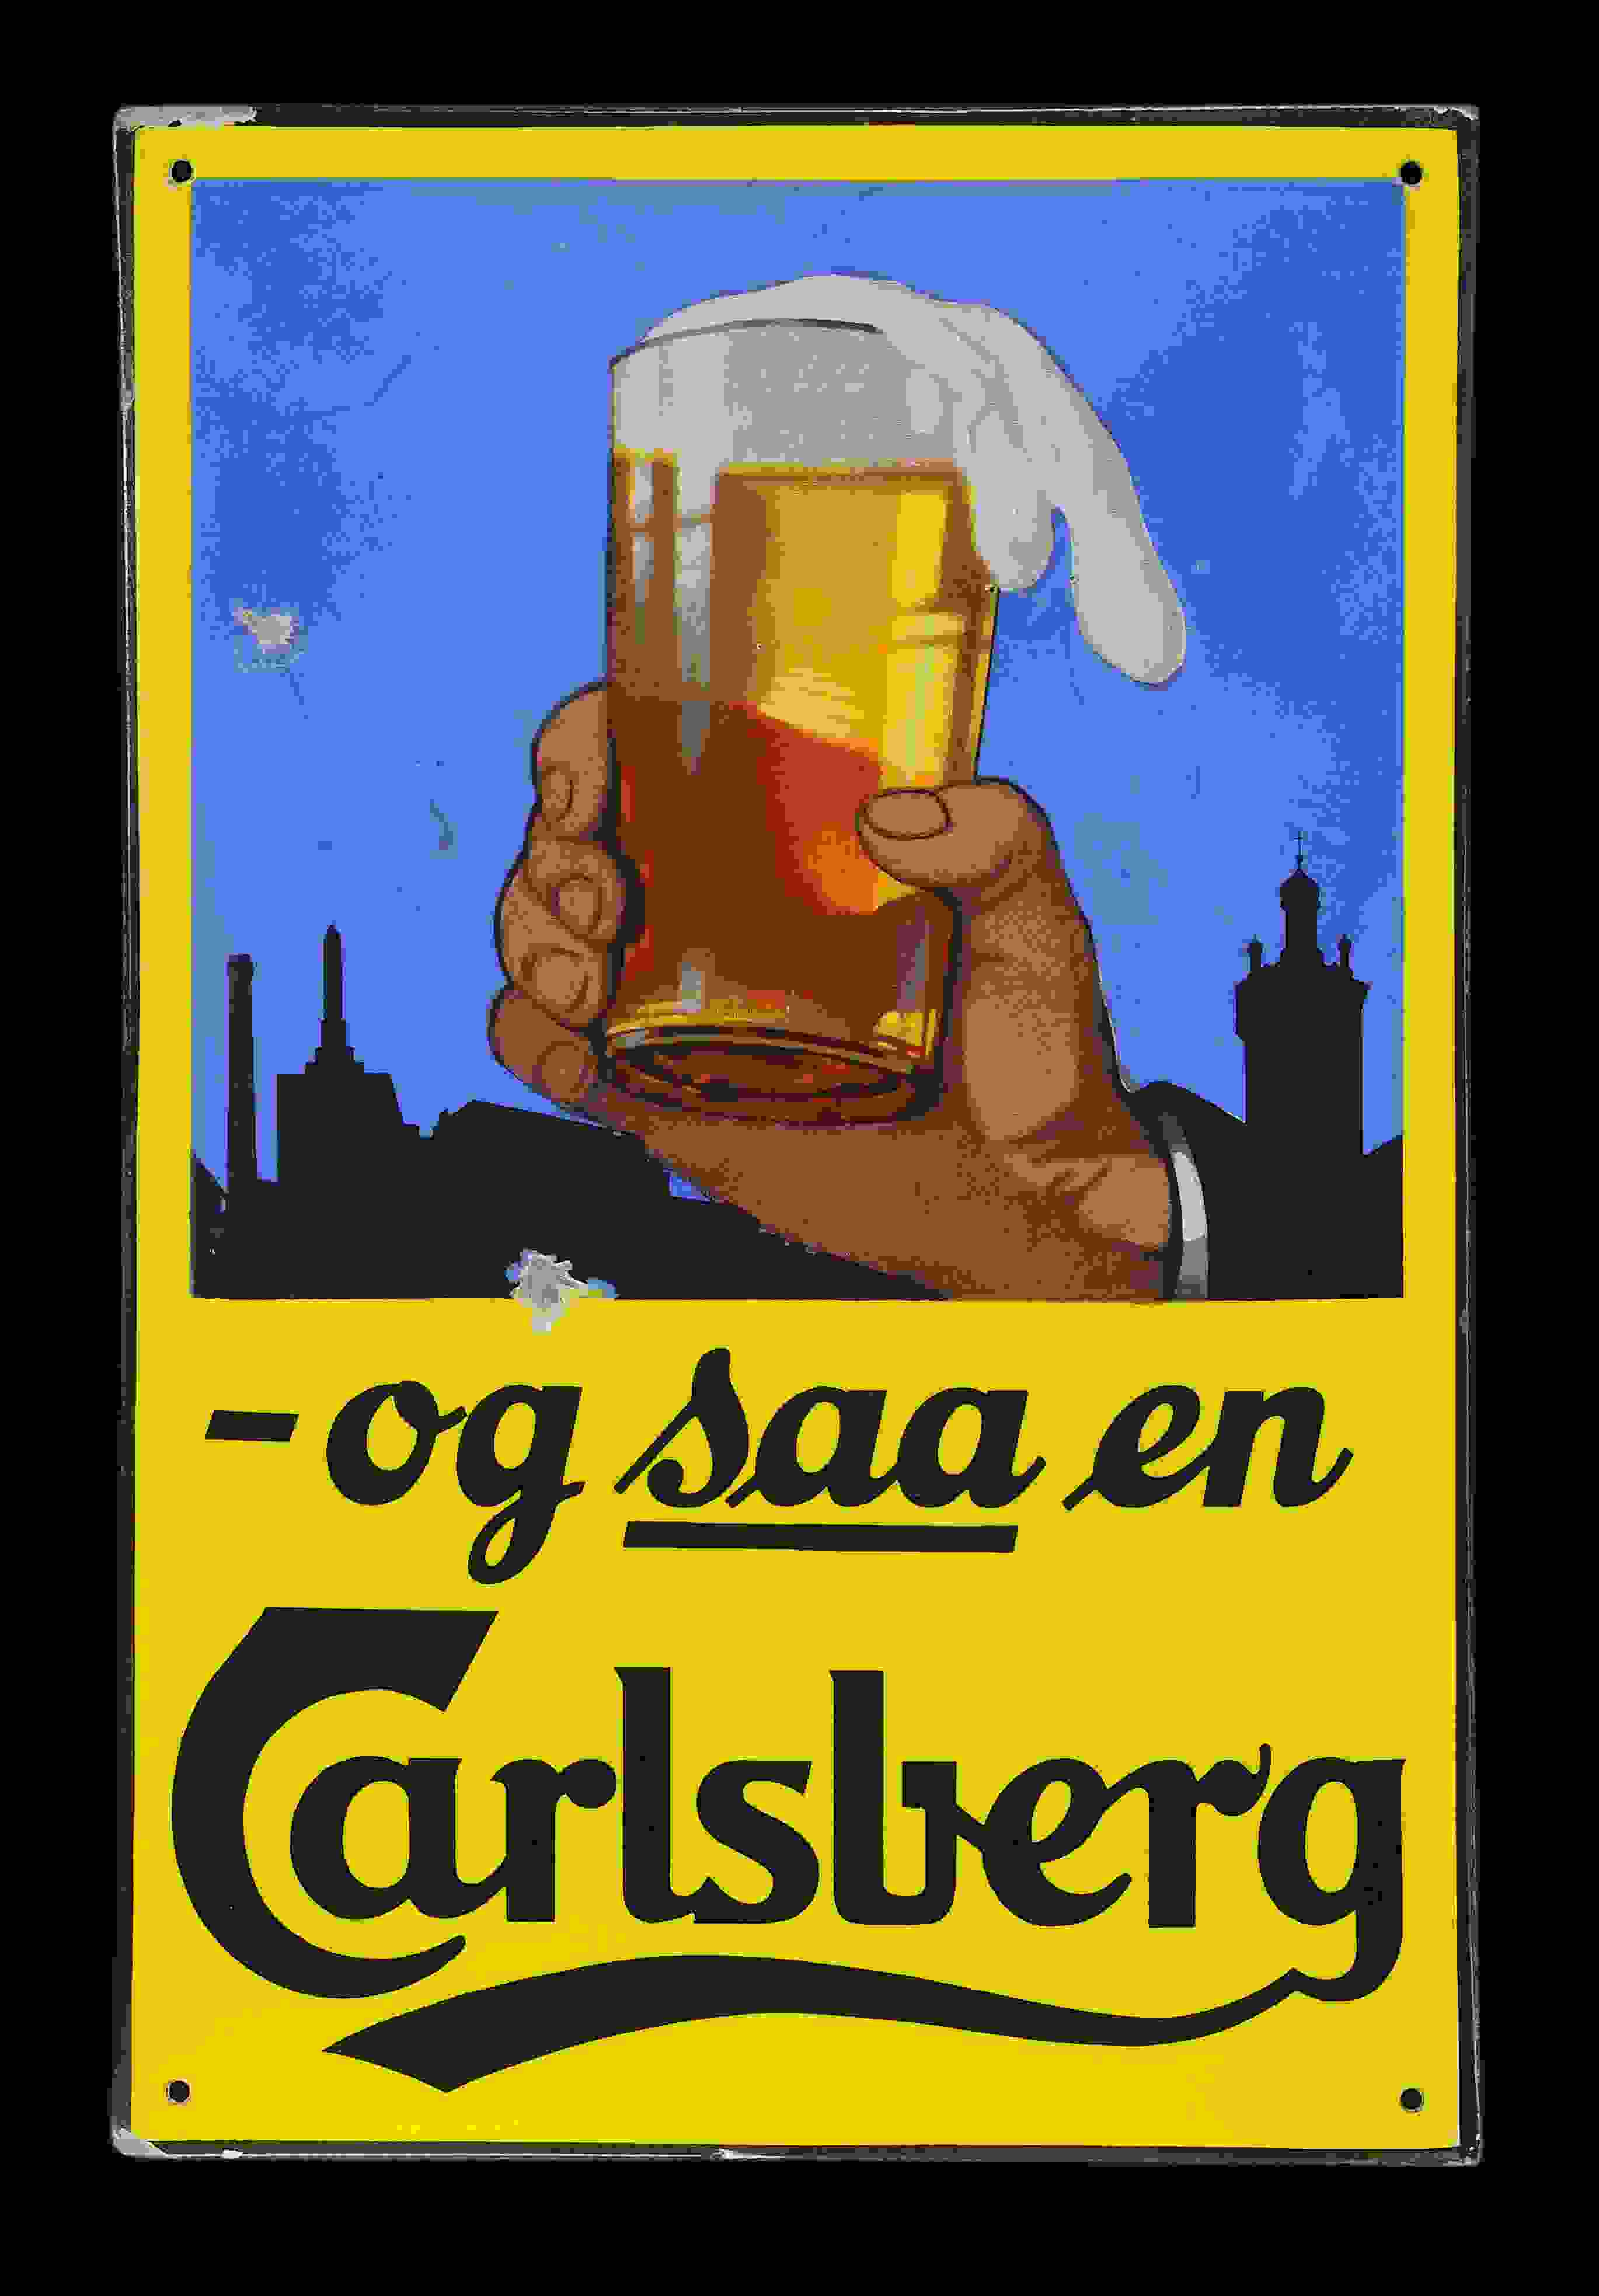 Carlsberg -og saa en 